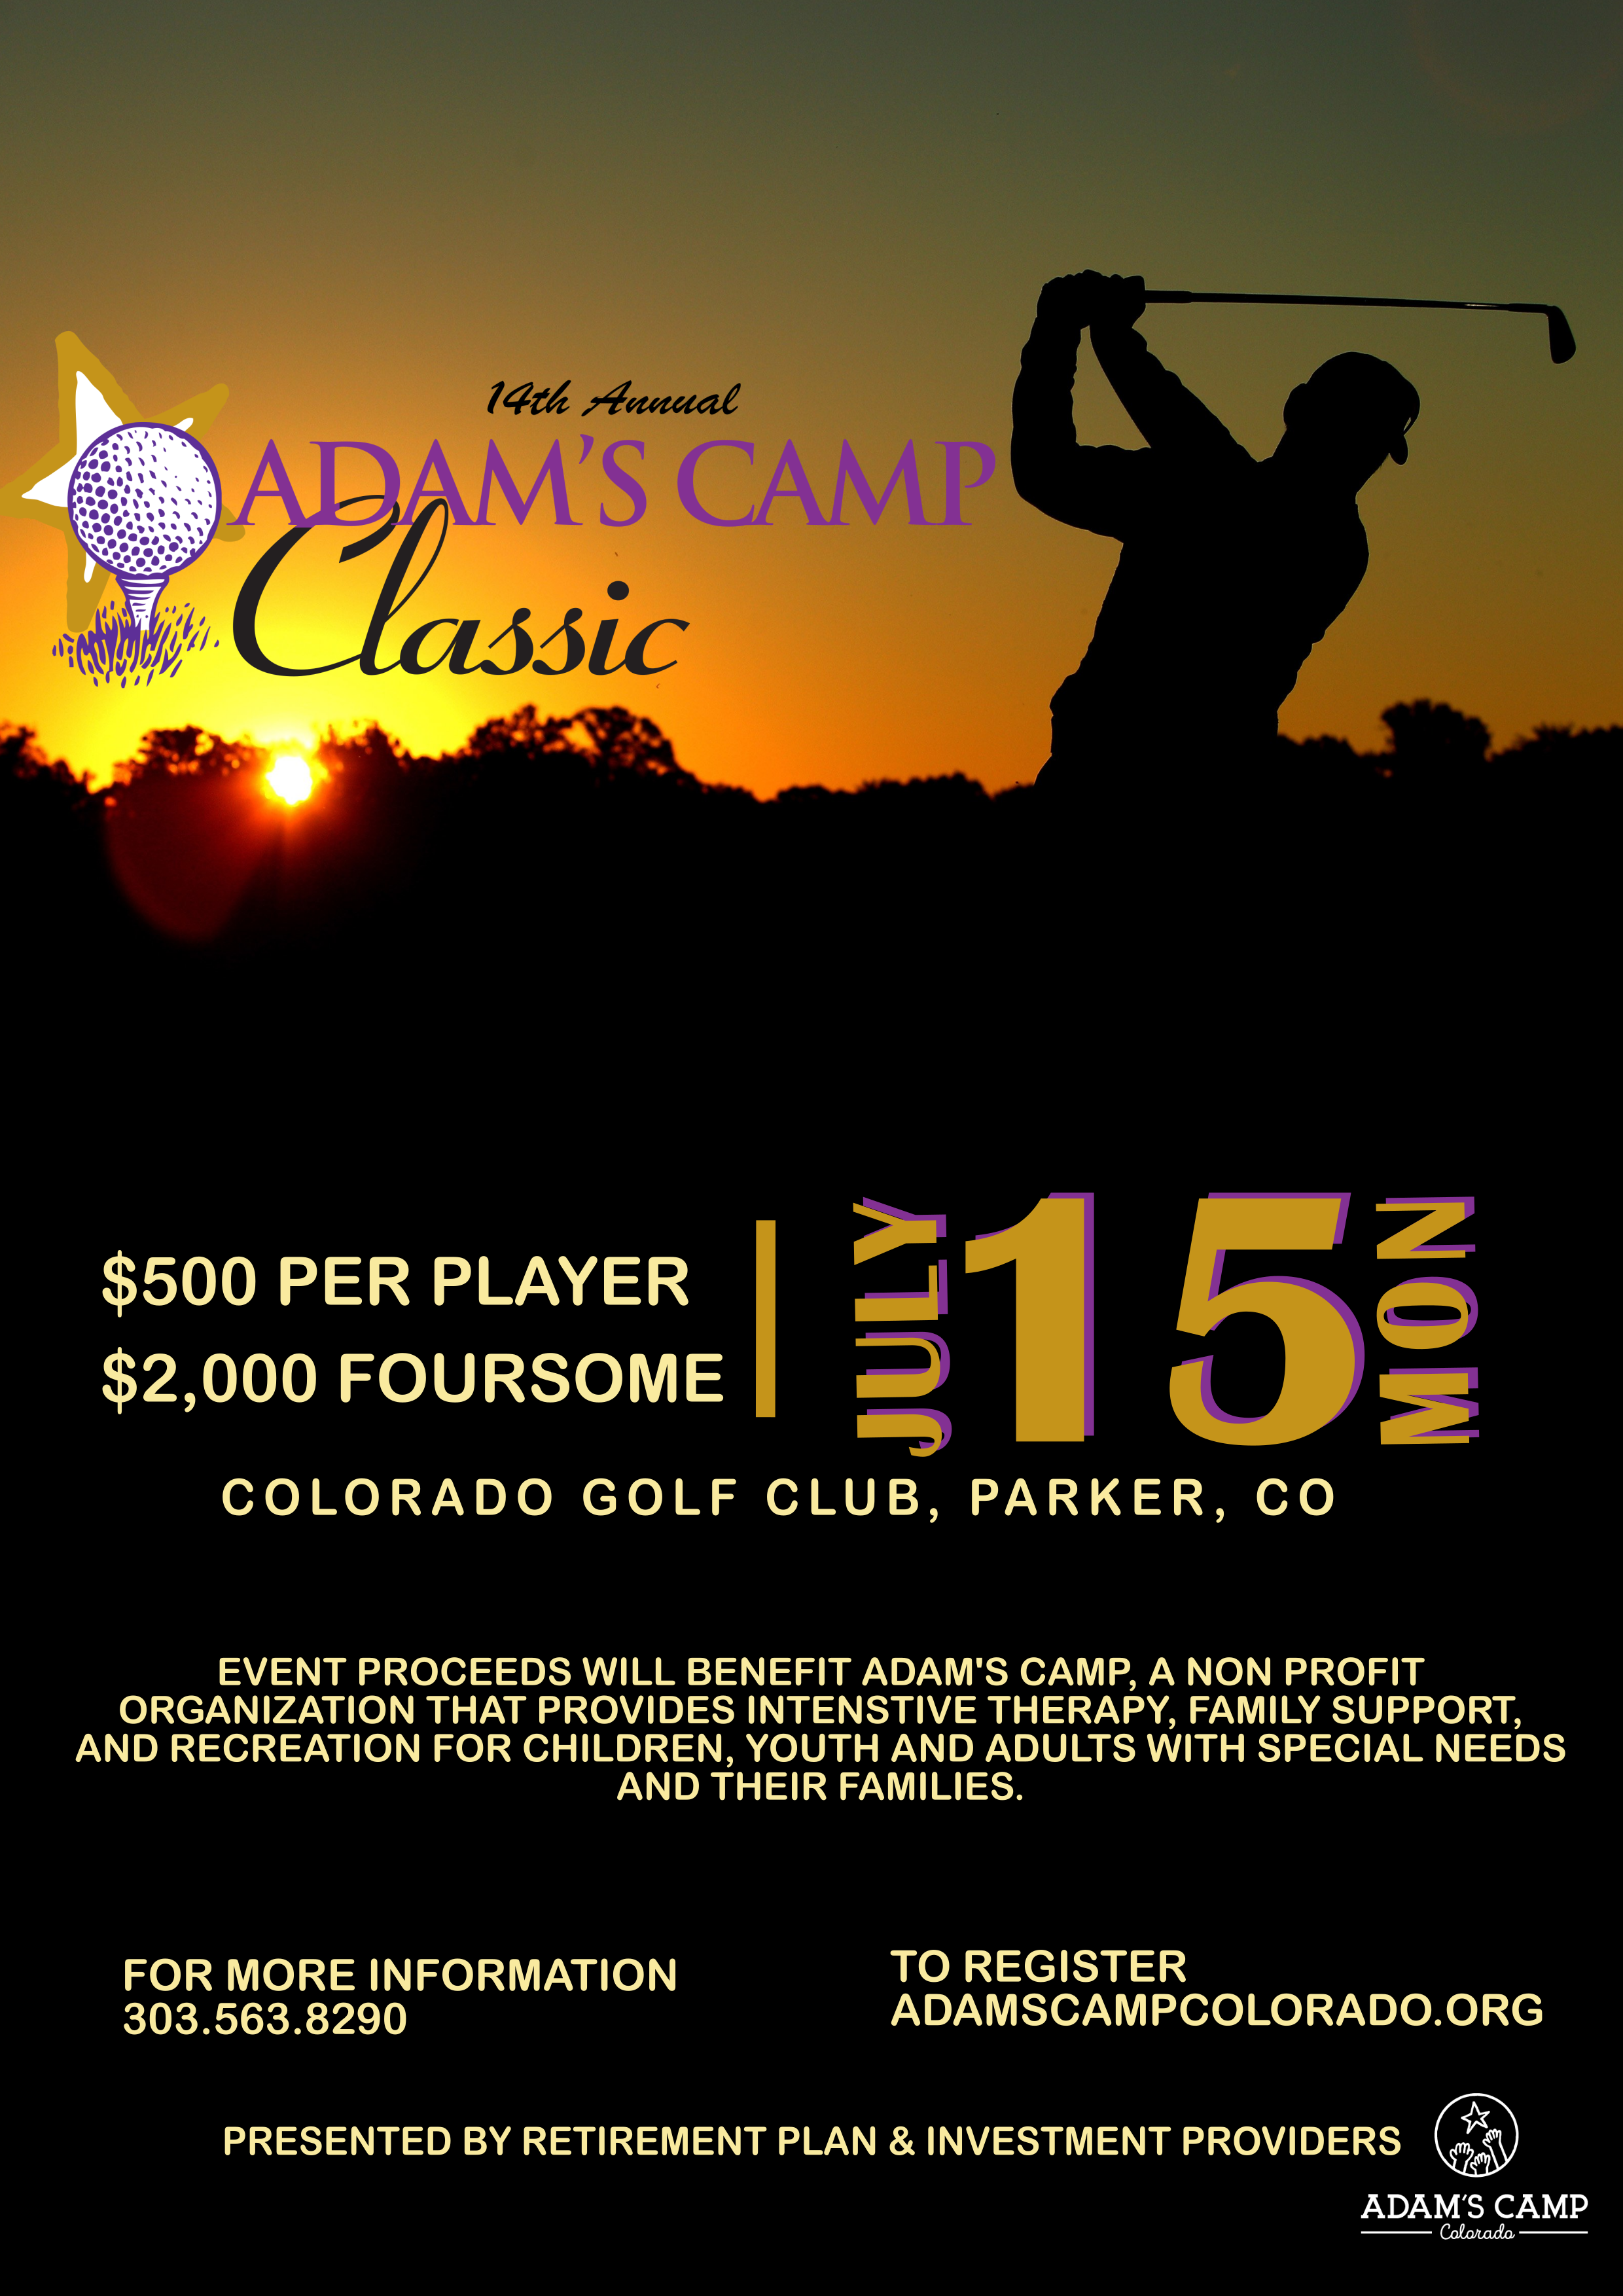 14th Annual Adam's Camp Classic Golf Tournament